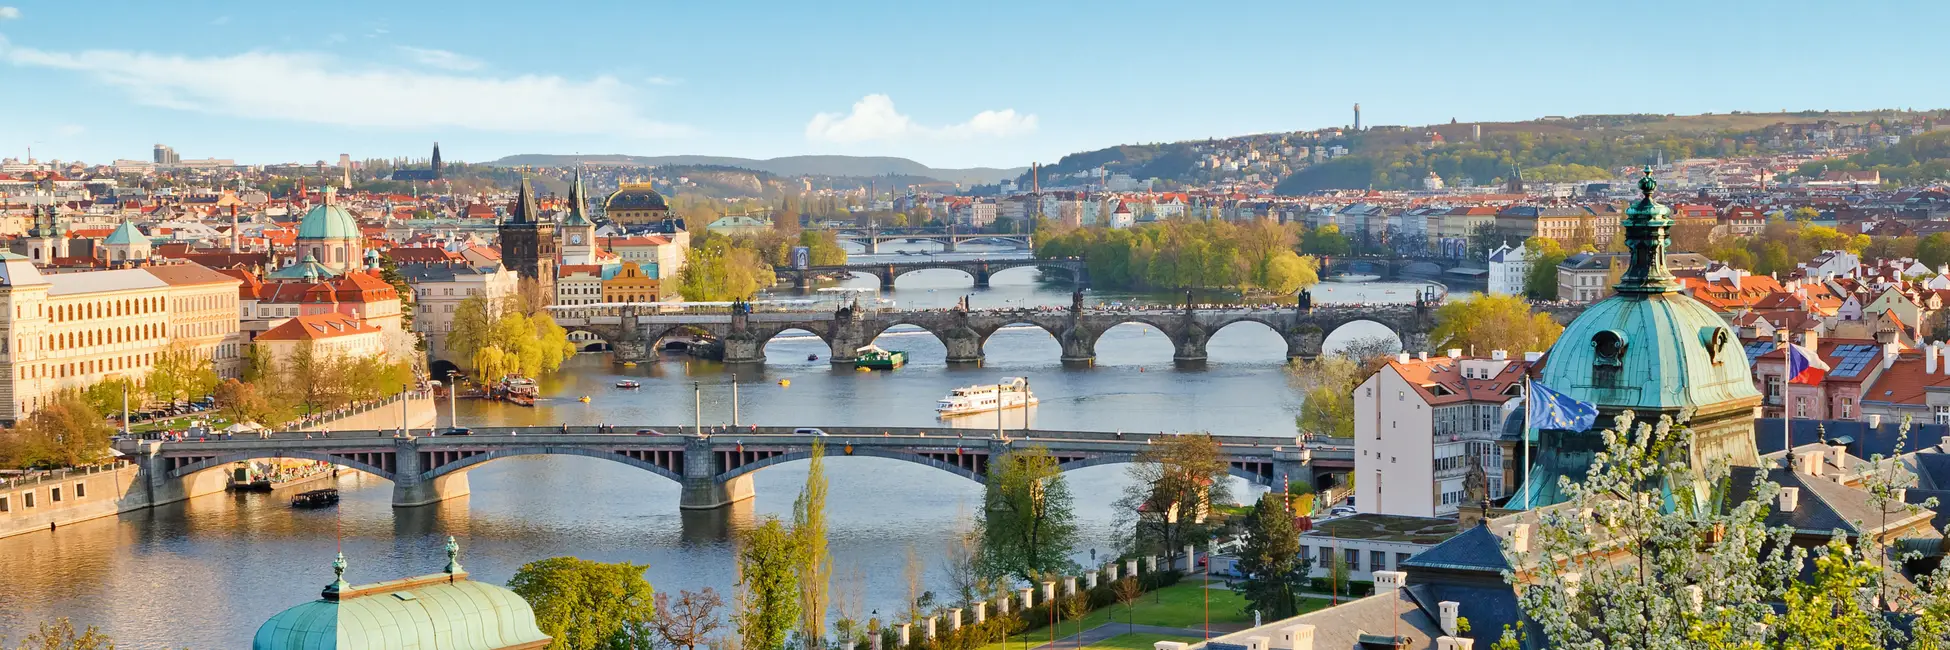 Les ponts de Pragues